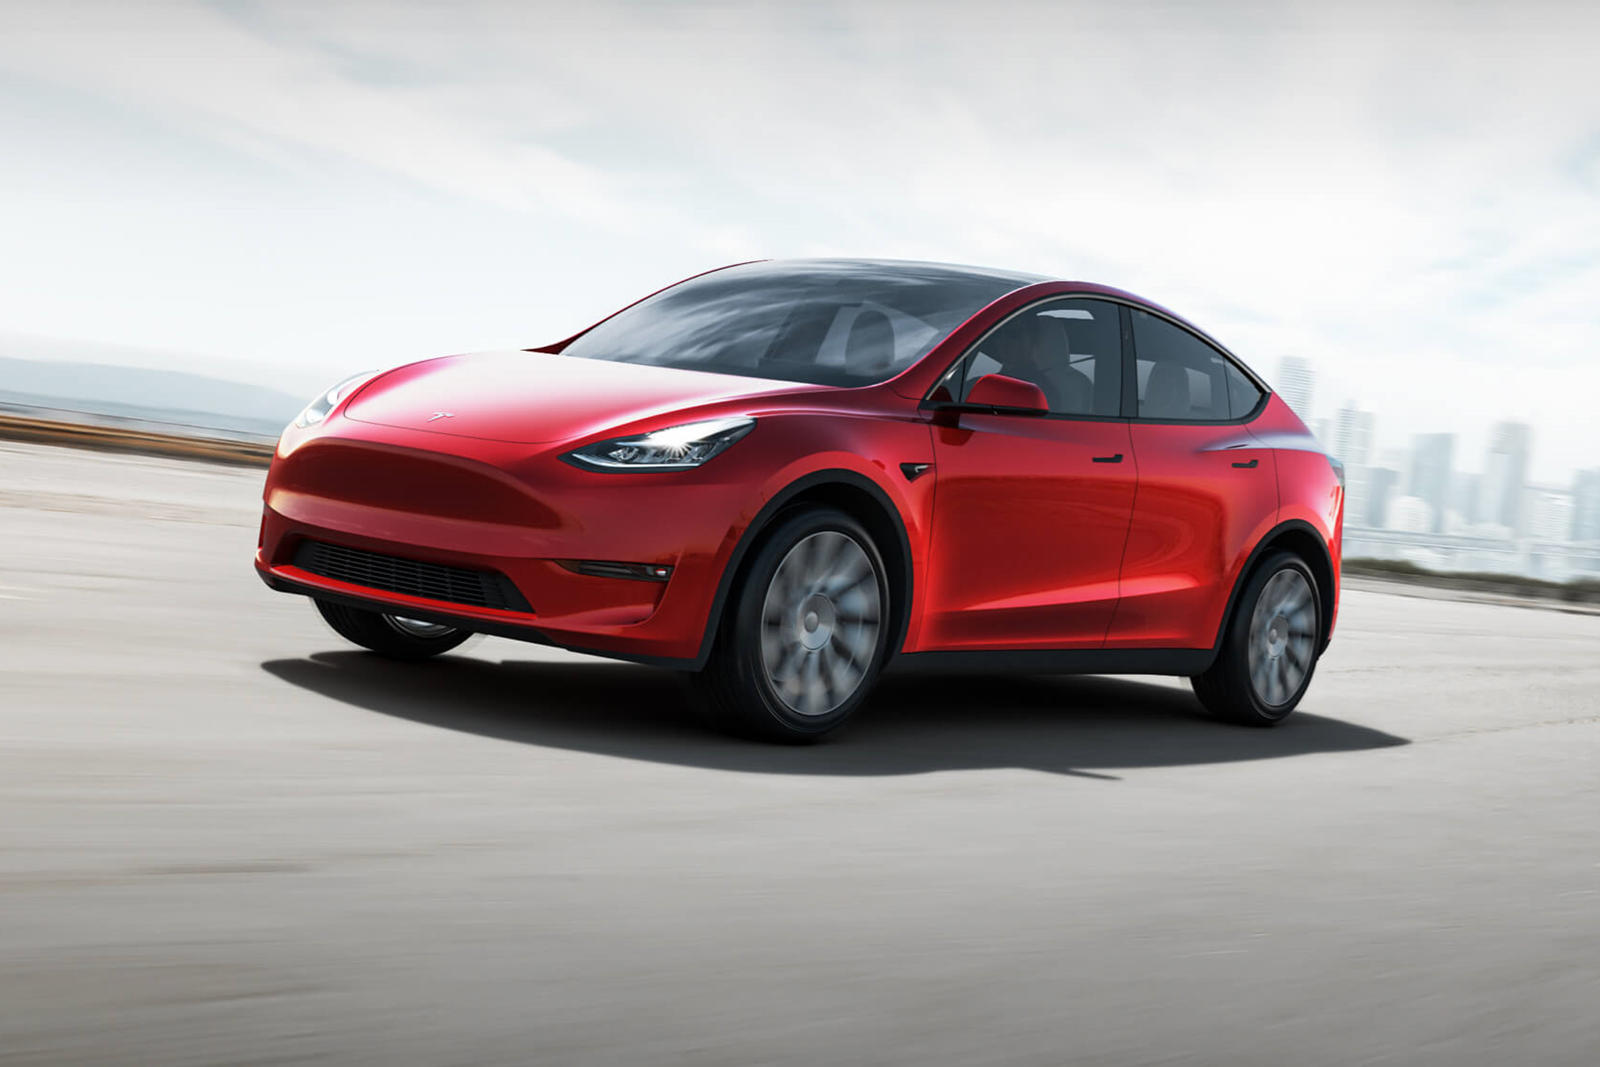 На этой неделе в Твиттере Илон Маск подтвердил, что новый Tesla Gigafactory в Остине, штат Техас, начнет производство Model Y с оснащением4680, как только батарея будет завершена. Ожидается, что после ввода в эксплуатацию нового завода будет создано 